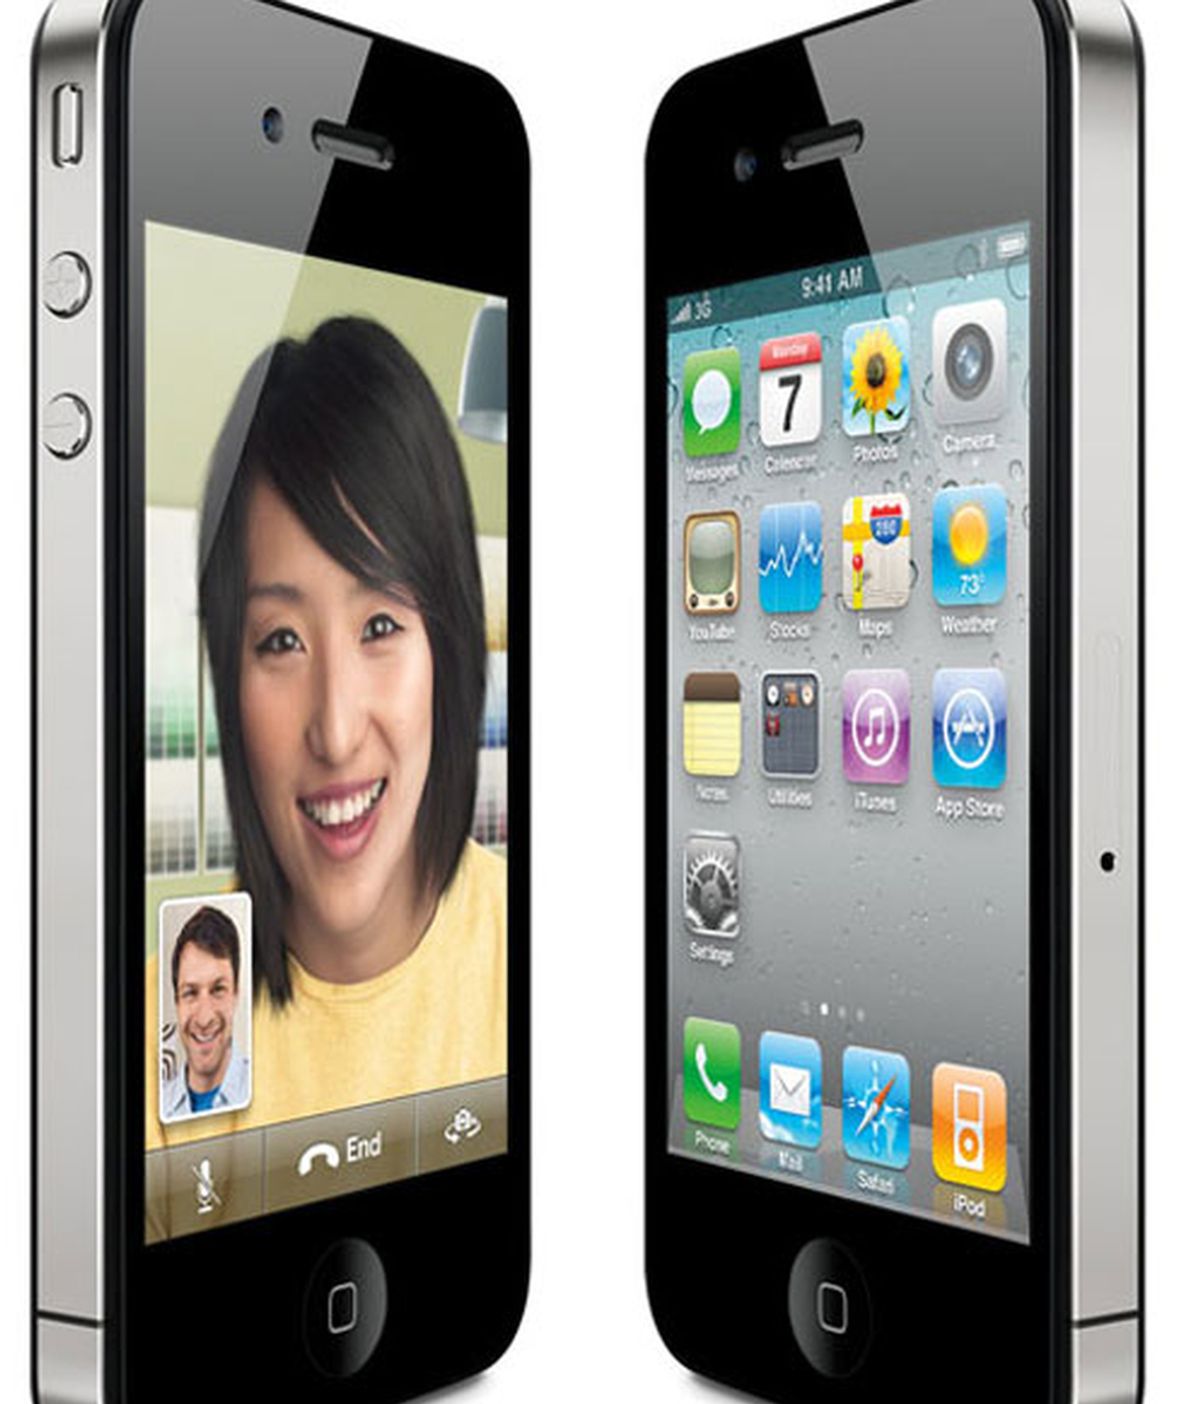 El iPhone 4 de Apple ha conseguido entrar en el Guinness World Record